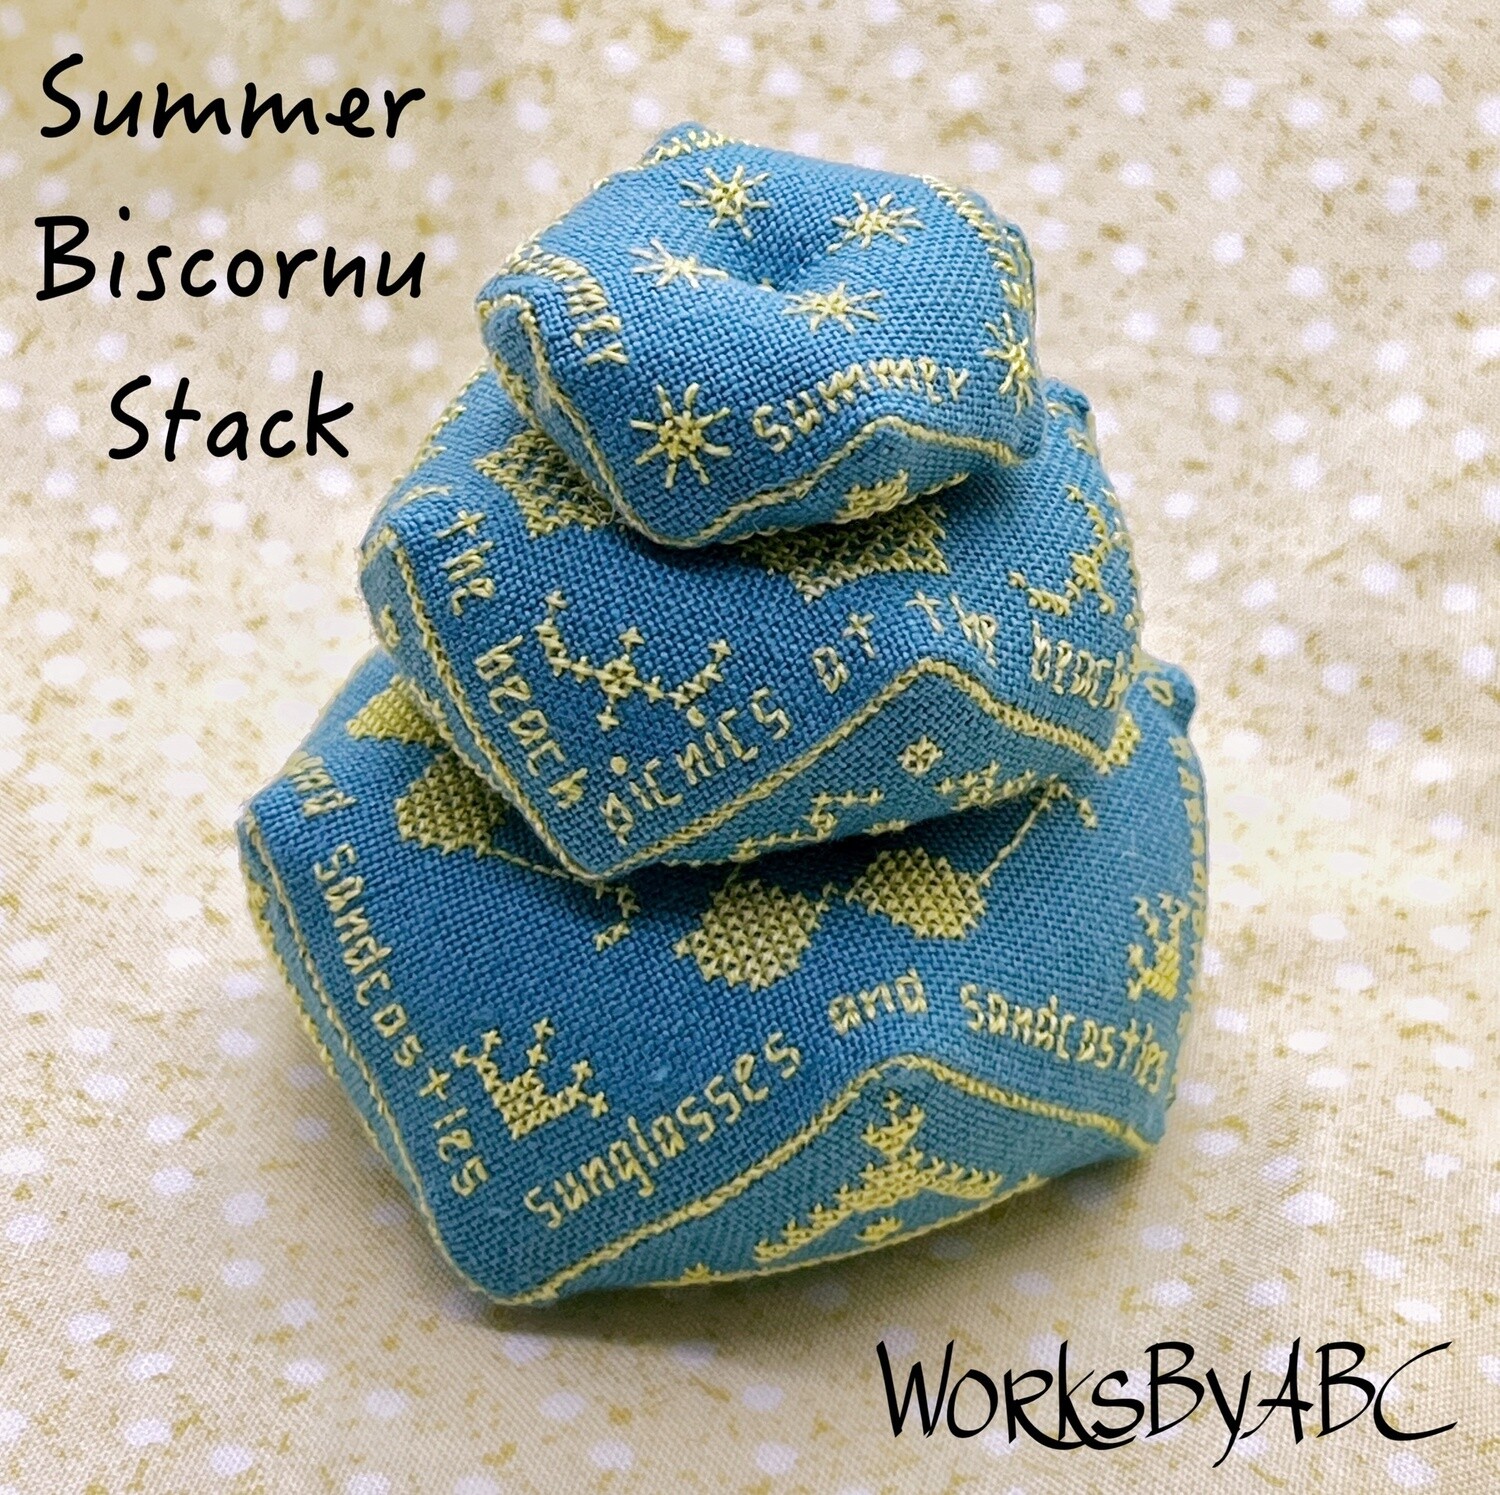 Summer Biscornu Stack